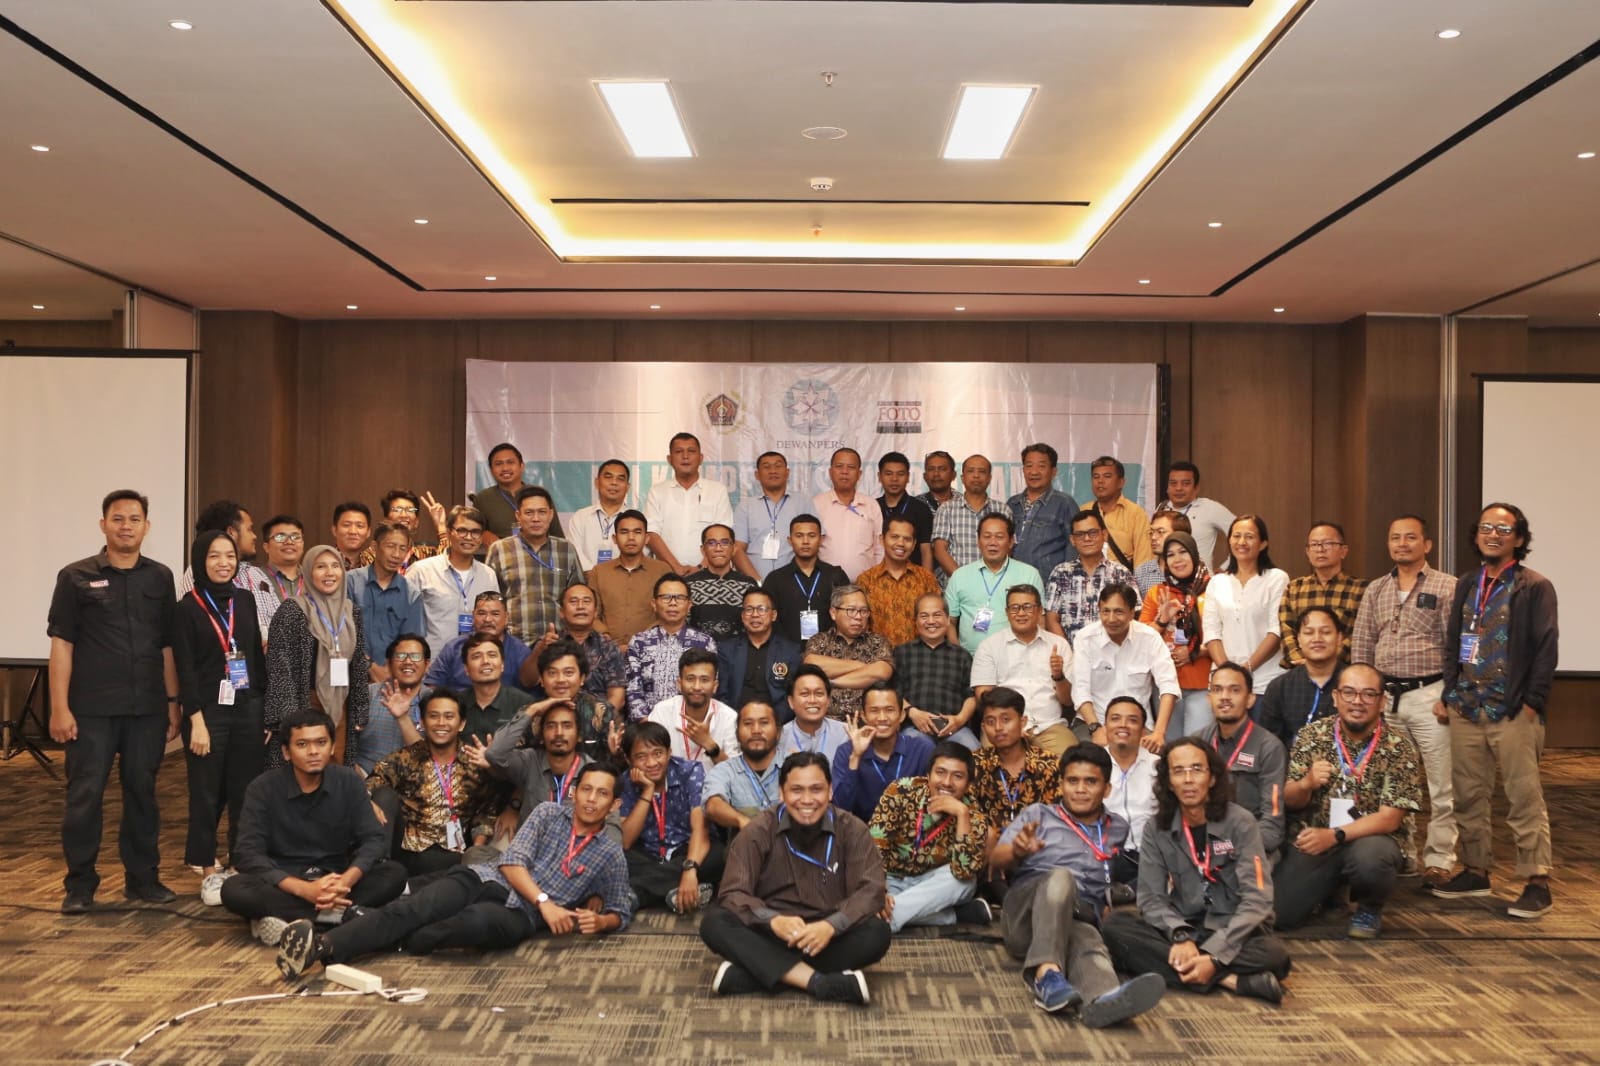 Peserta Uji Kompetensi Wartawan (UKW) dari Persatuan Wartawan Indonesia (PWI), dan Pewarta Foto Indonesia (PFI), para penguji, dan Dewan Pers. UKW ini dilaksanakan di Hotel Grand Mercure, Medan, Sumatera Utara tanggal 7- 8 Maret 2024.